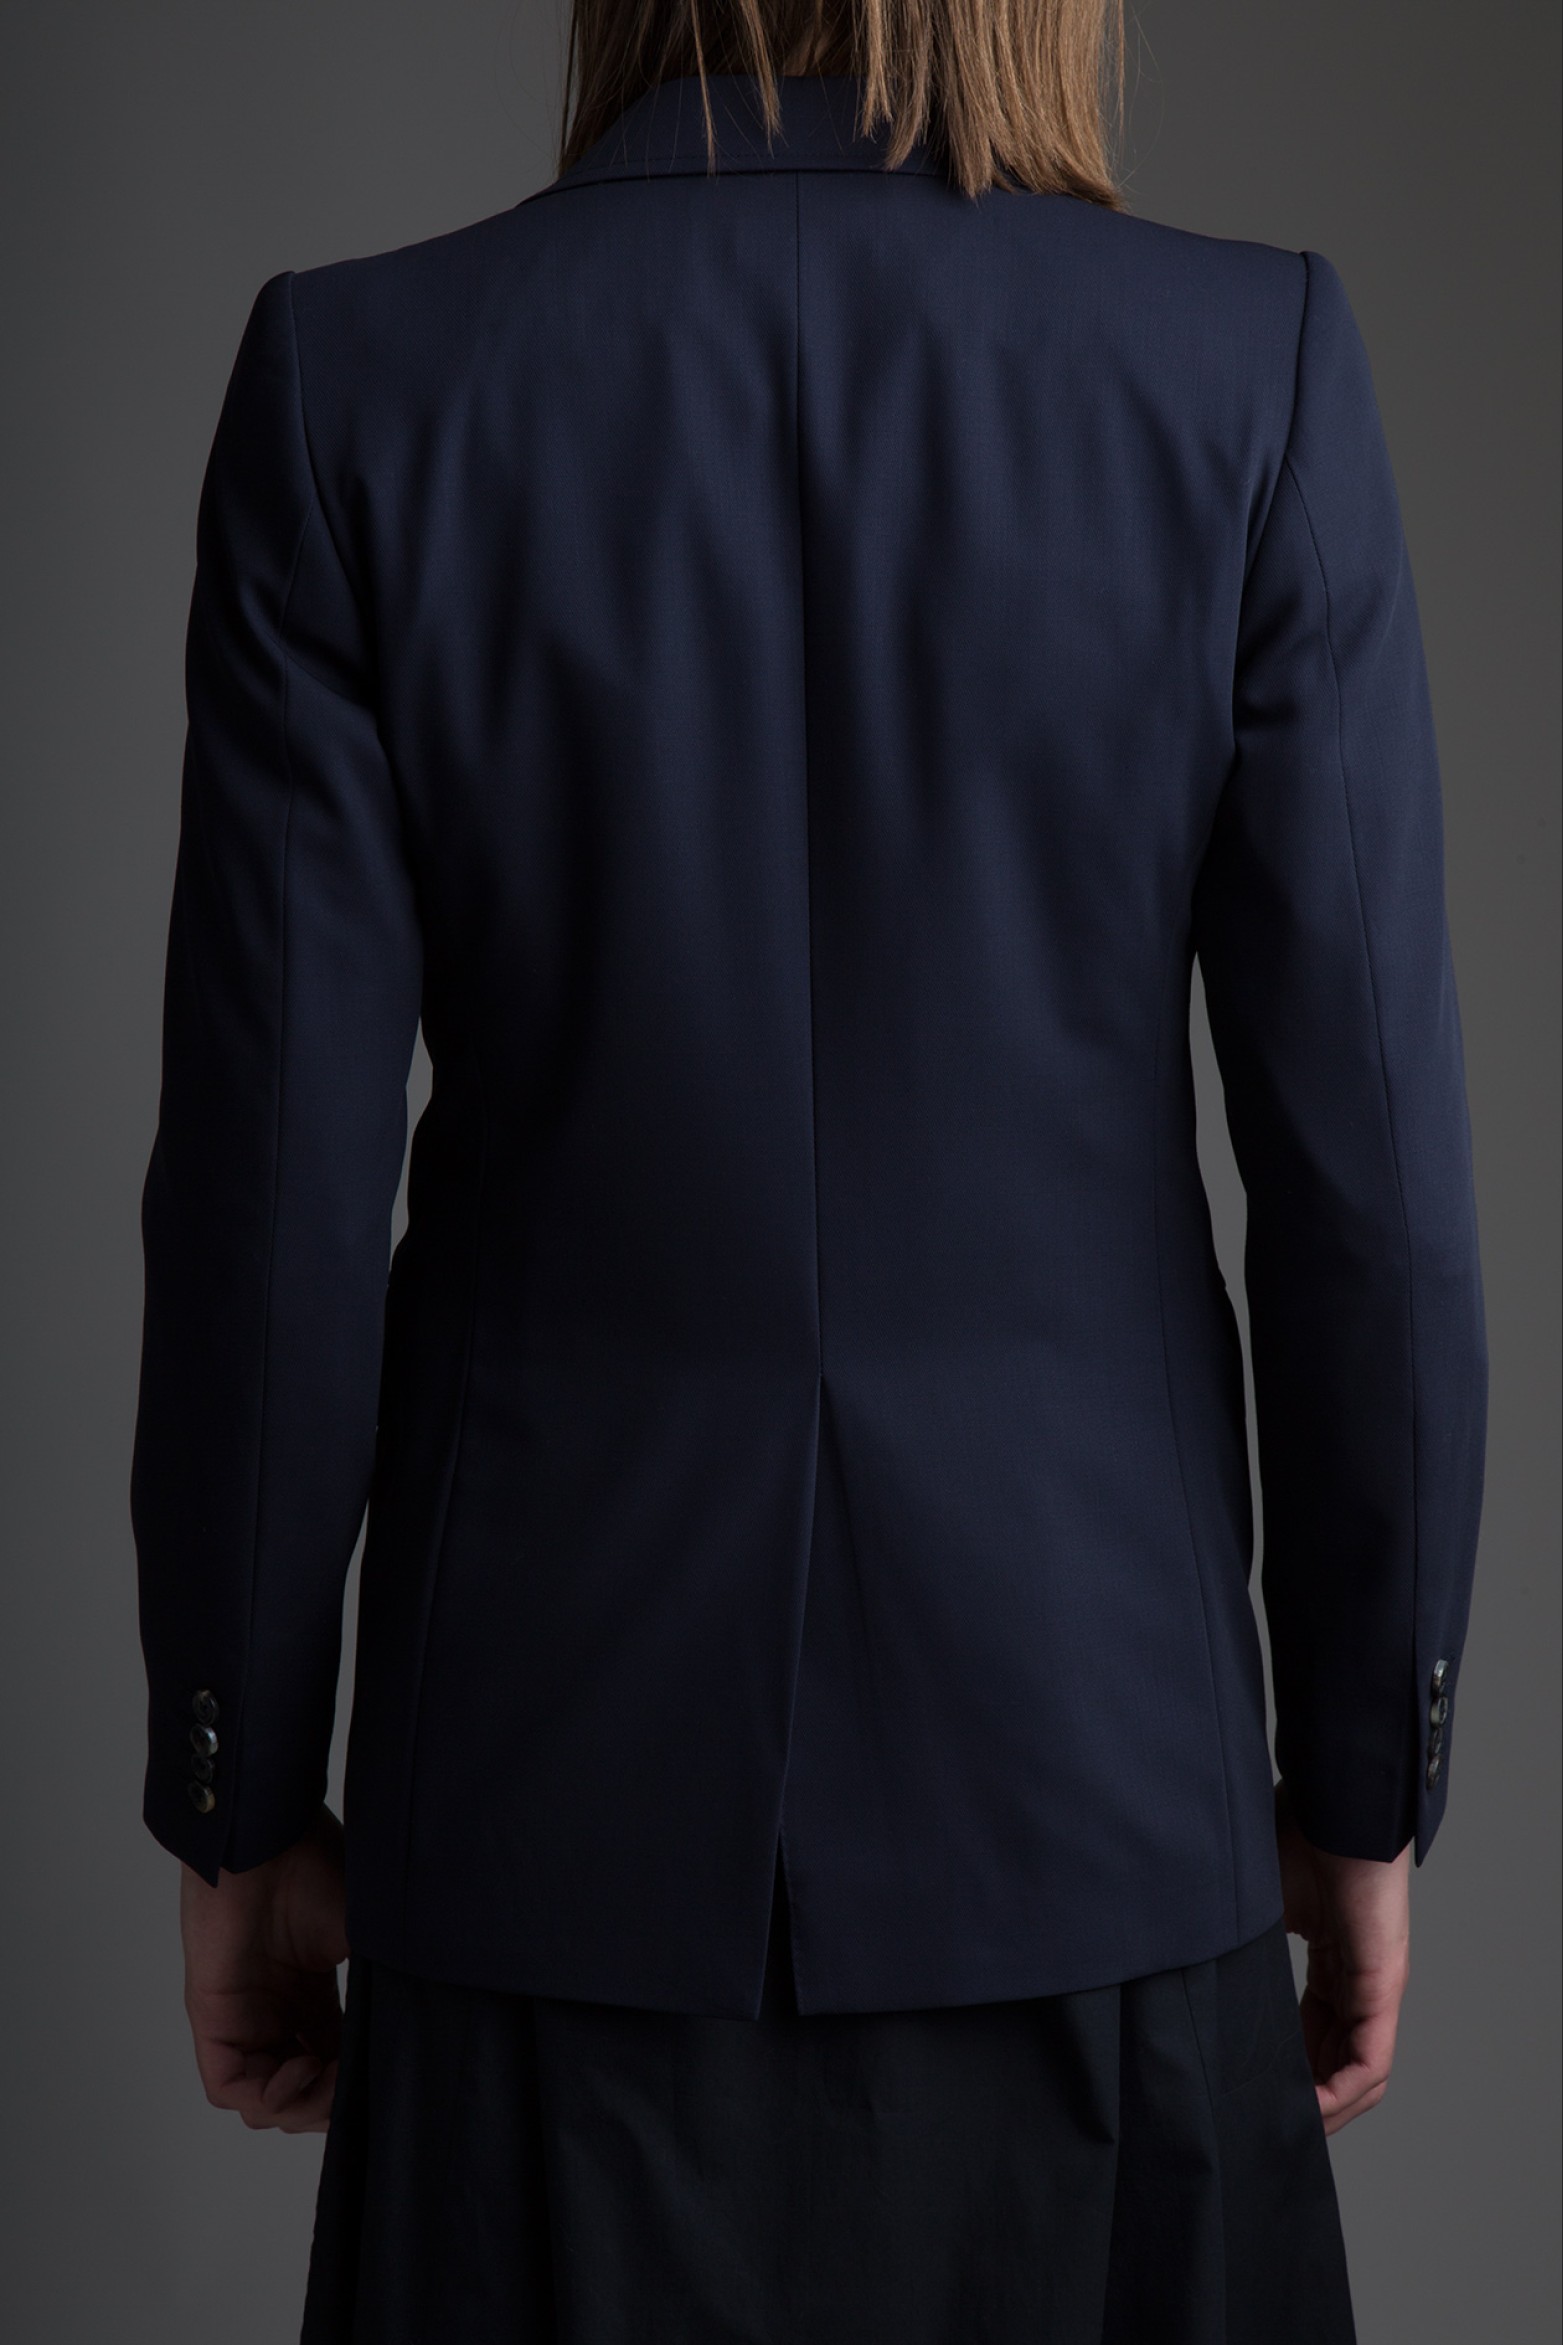 Dries Van Noten Blue Two-Button Suit